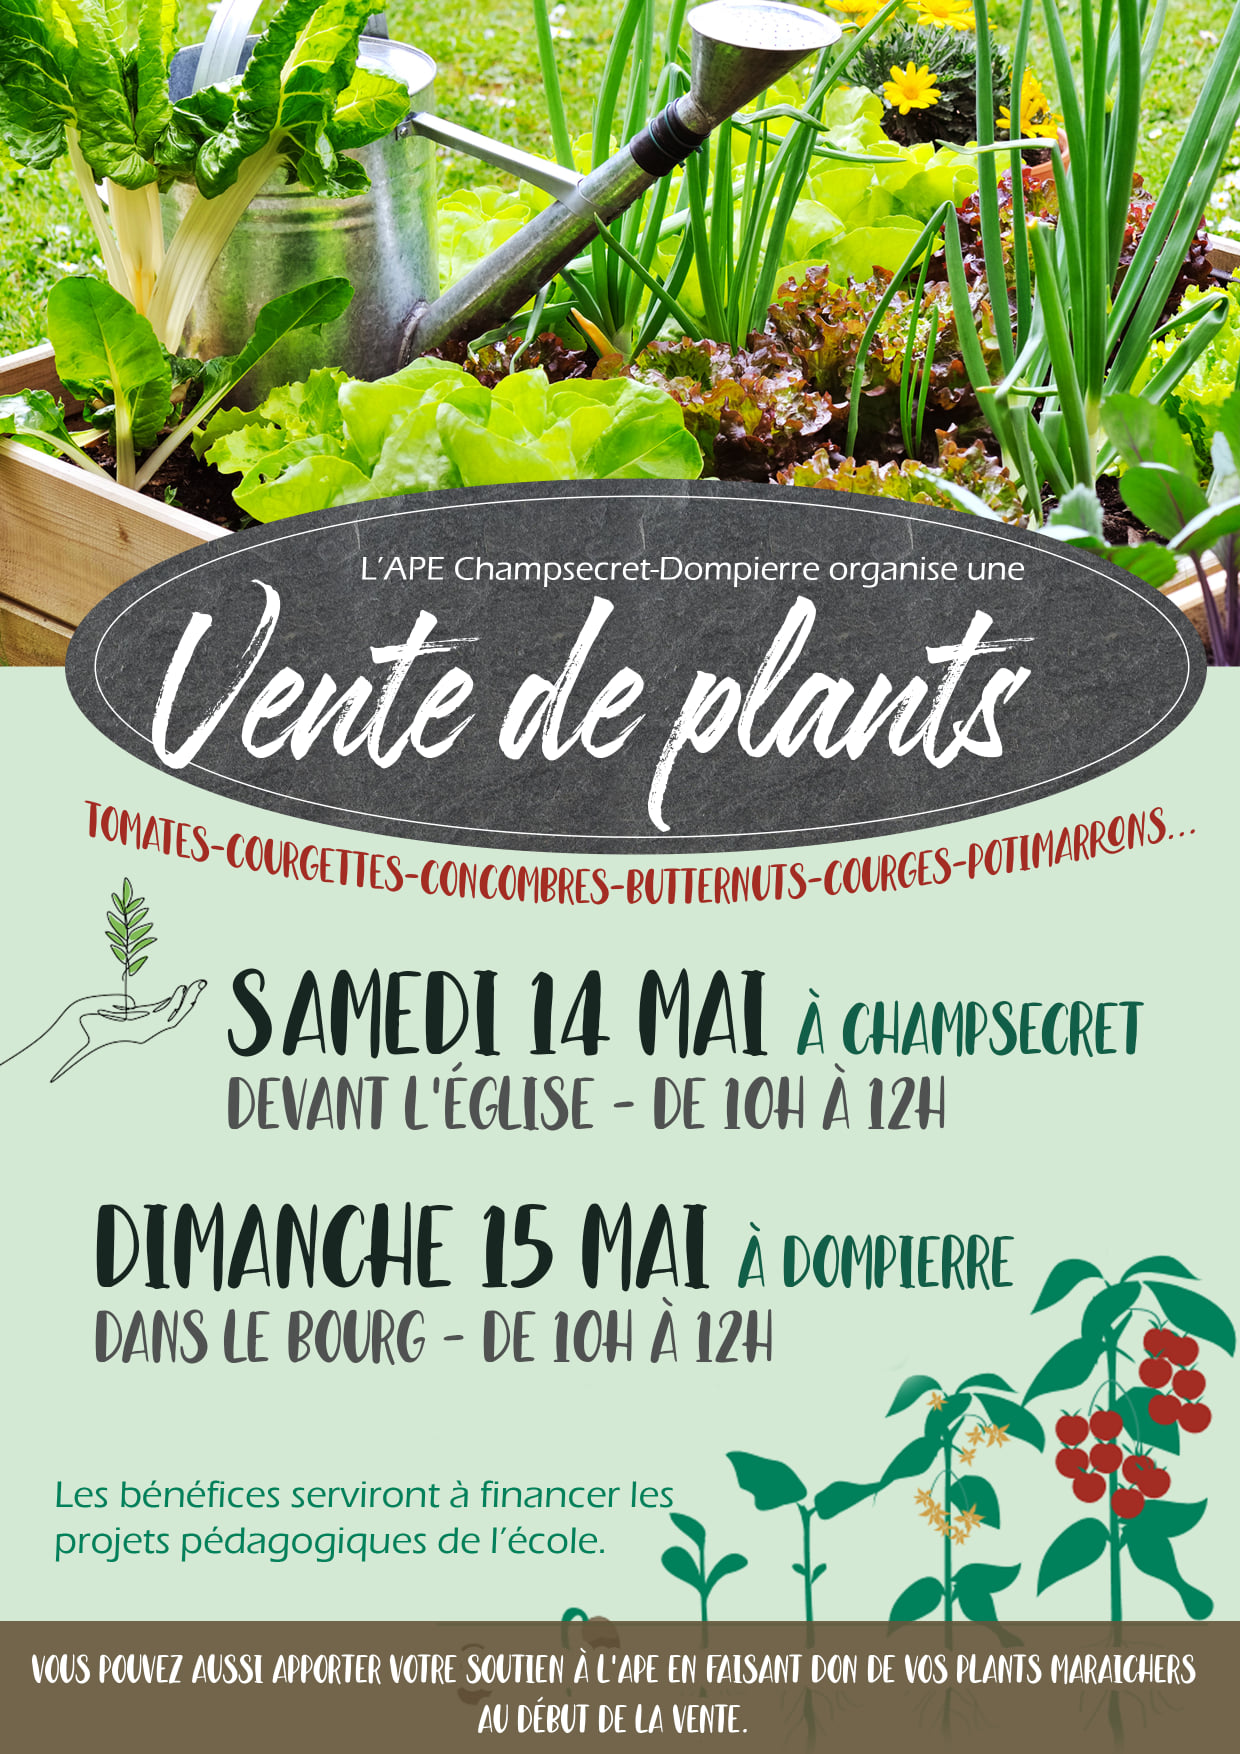 You are currently viewing Vente de plants – APE Champsecret – Dompierre